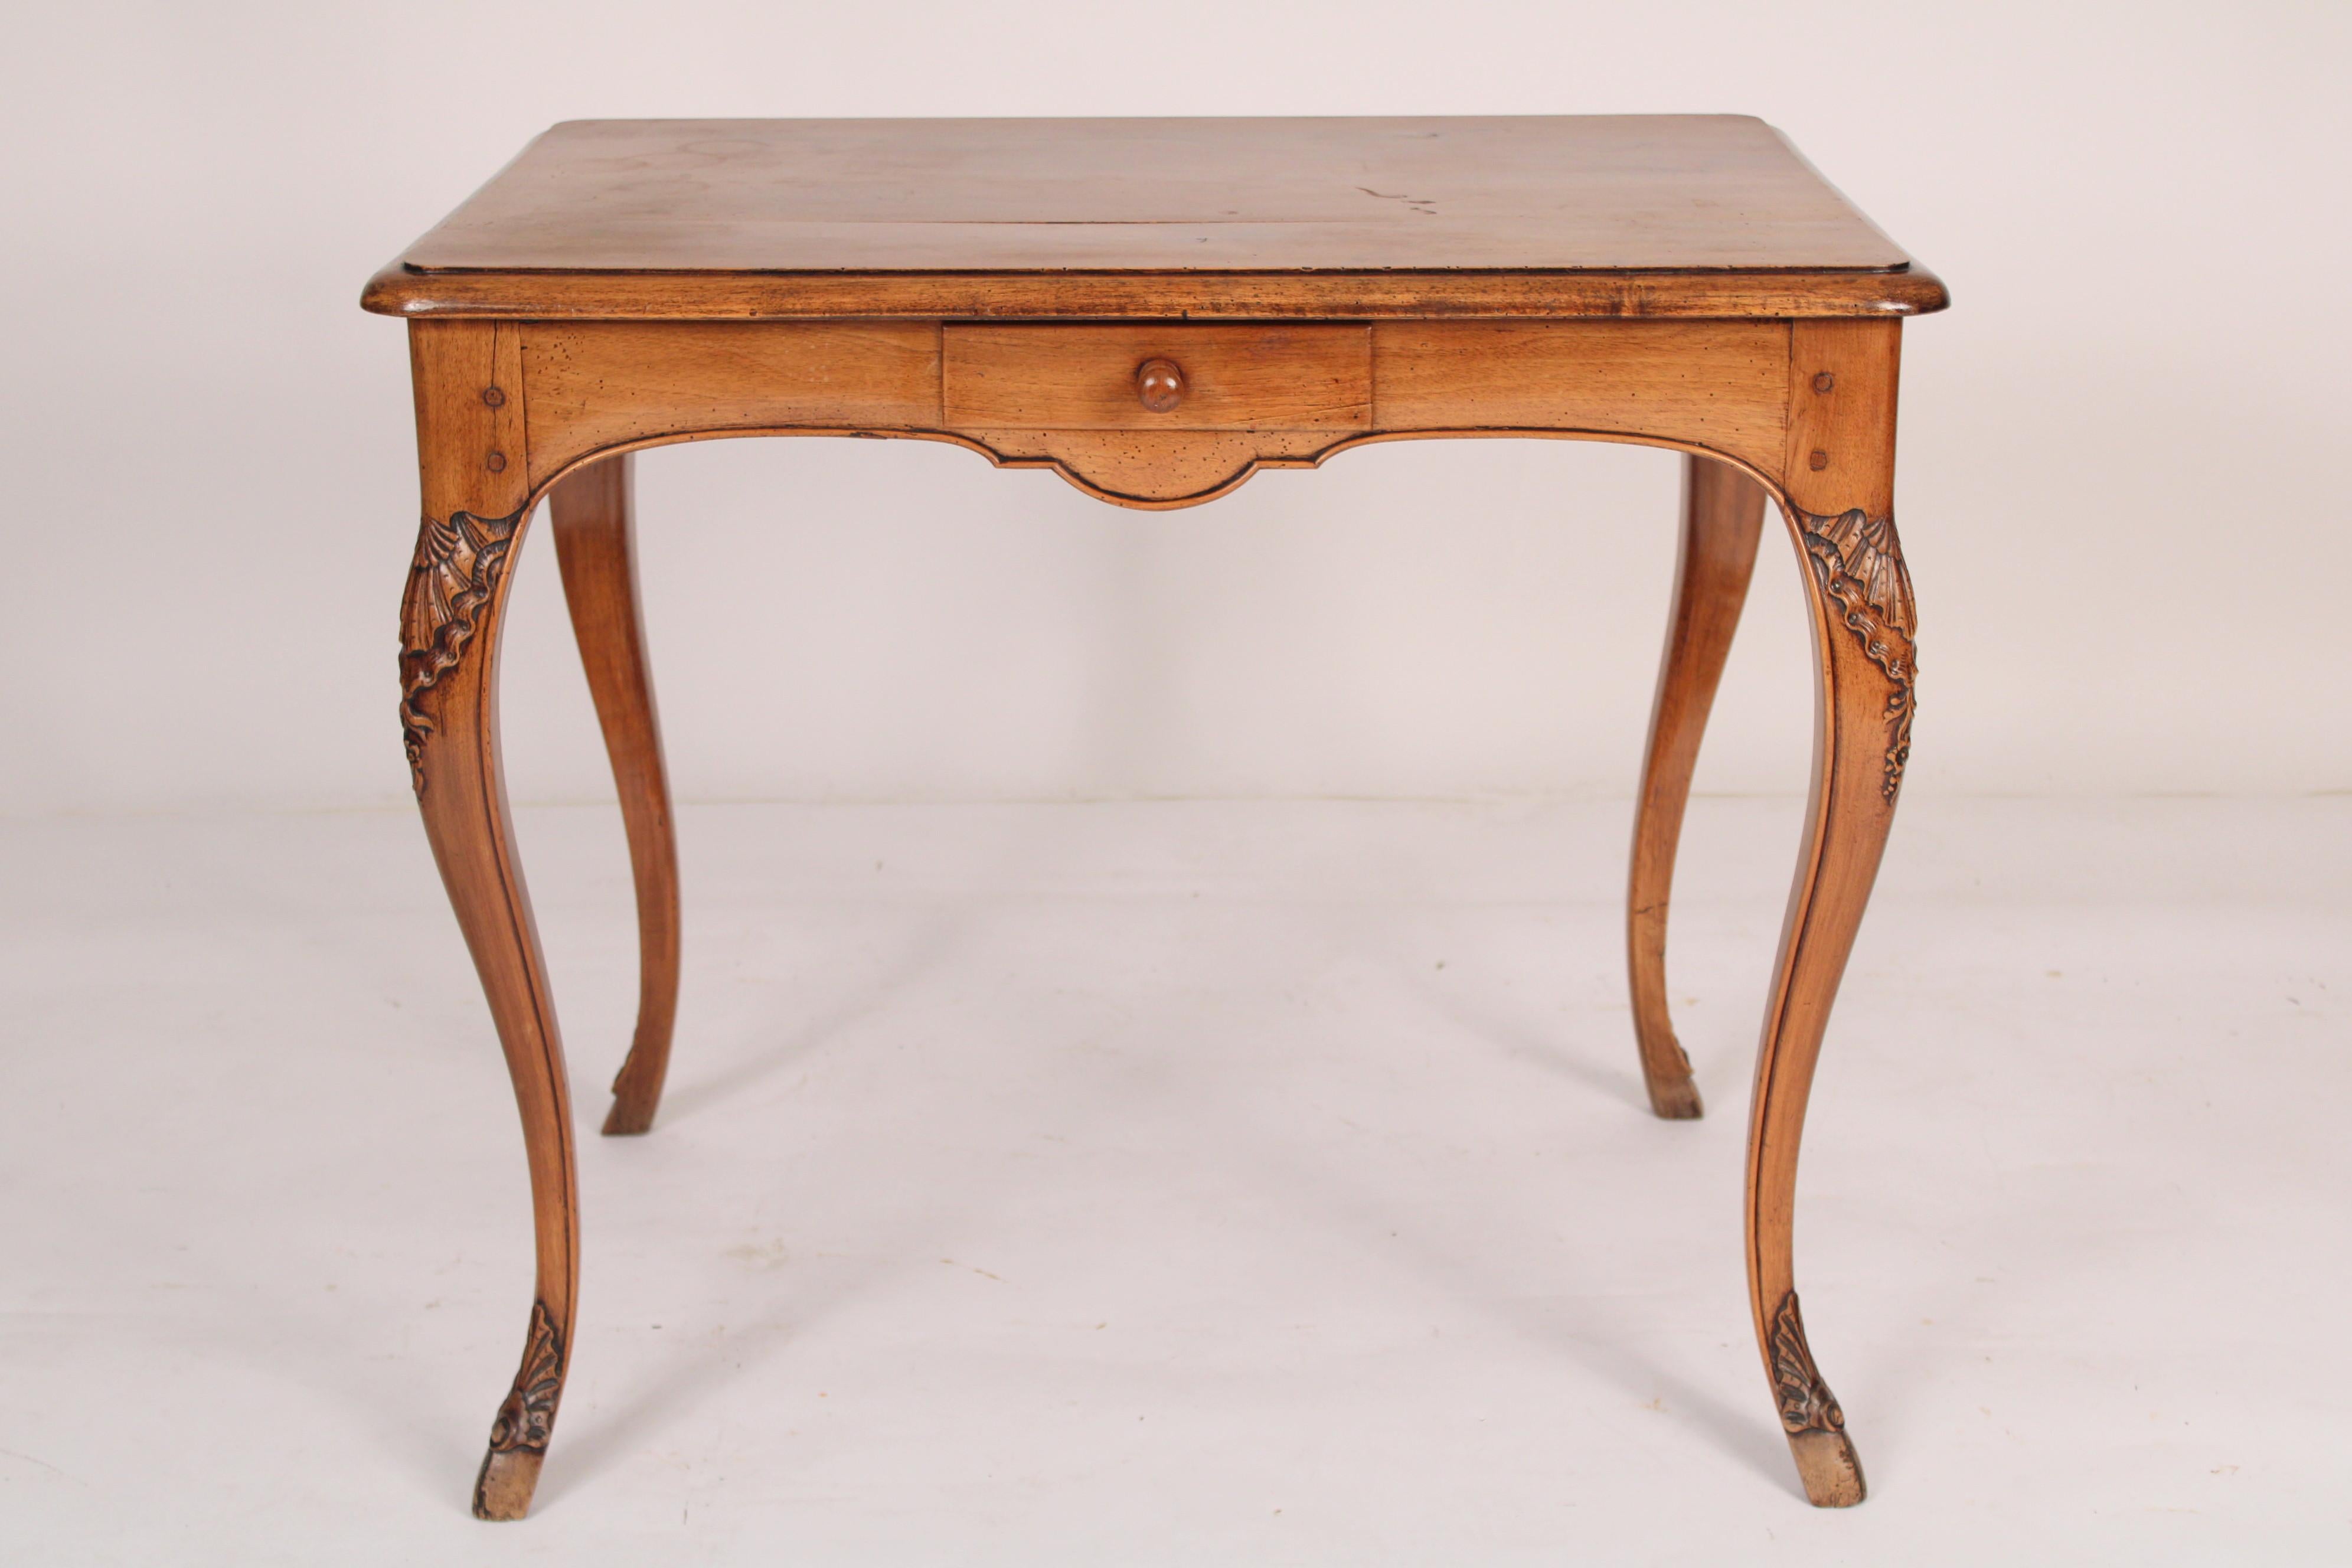 Antiker Louis XV Beistell-/Schreibtisch aus Nussbaum, 19. Jahrhundert. Mit rechteckiger, überhängender Platte, serpentinenförmiger Friesschürze mit einer Schublade, auf fein geschnitzten Cabriole-Beinen ruhend. Schöne alte Farbe. Wurde früher von